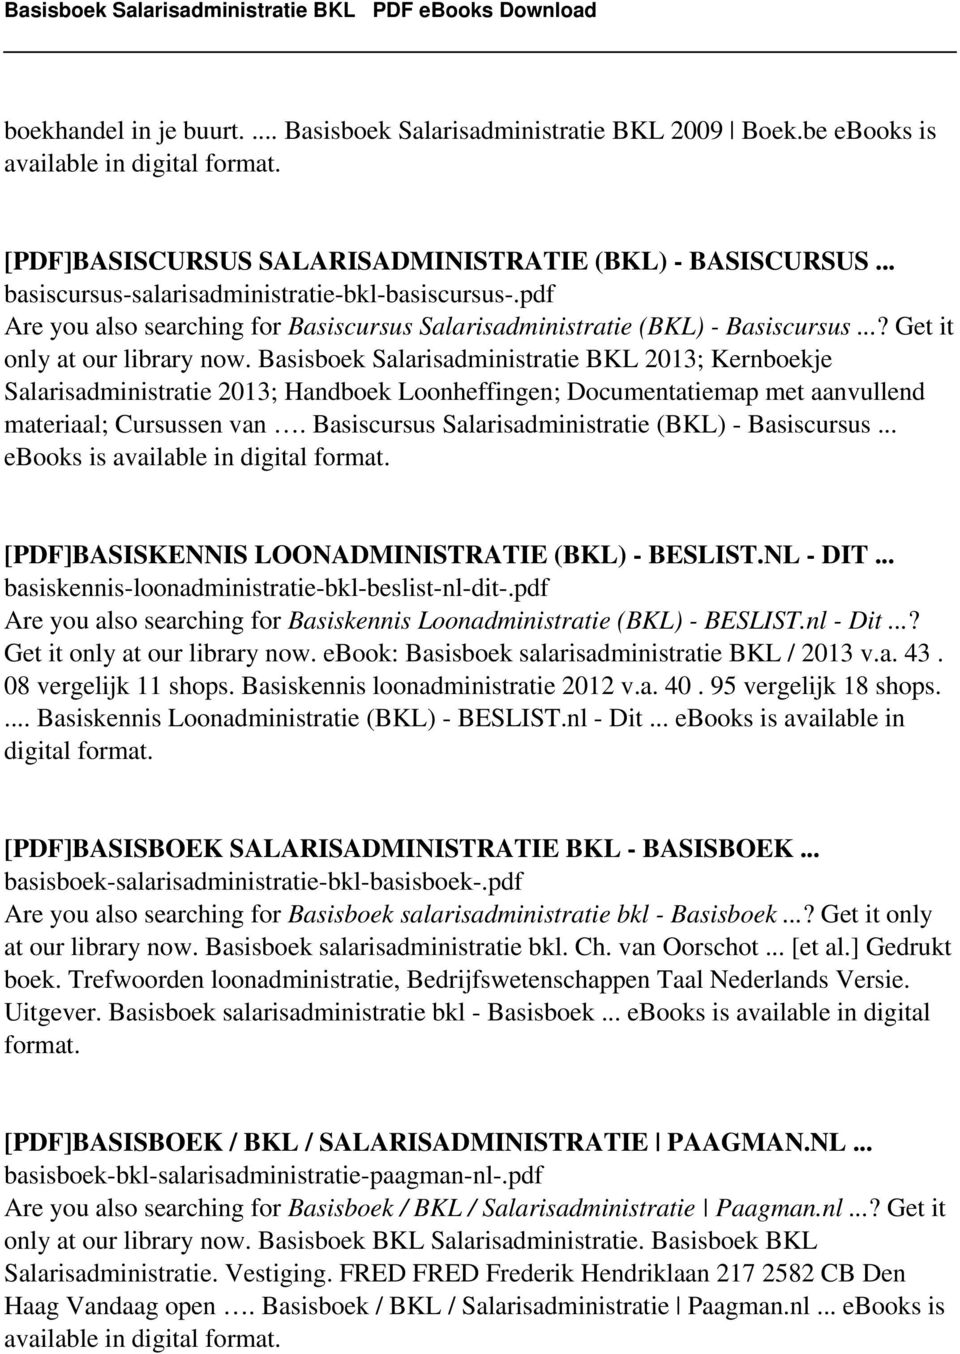 Basisboek Salarisadministratie BKL 2013; Kernboekje Salarisadministratie 2013; Handboek Loonheffingen; Documentatiemap met aanvullend materiaal; Cursussen van.